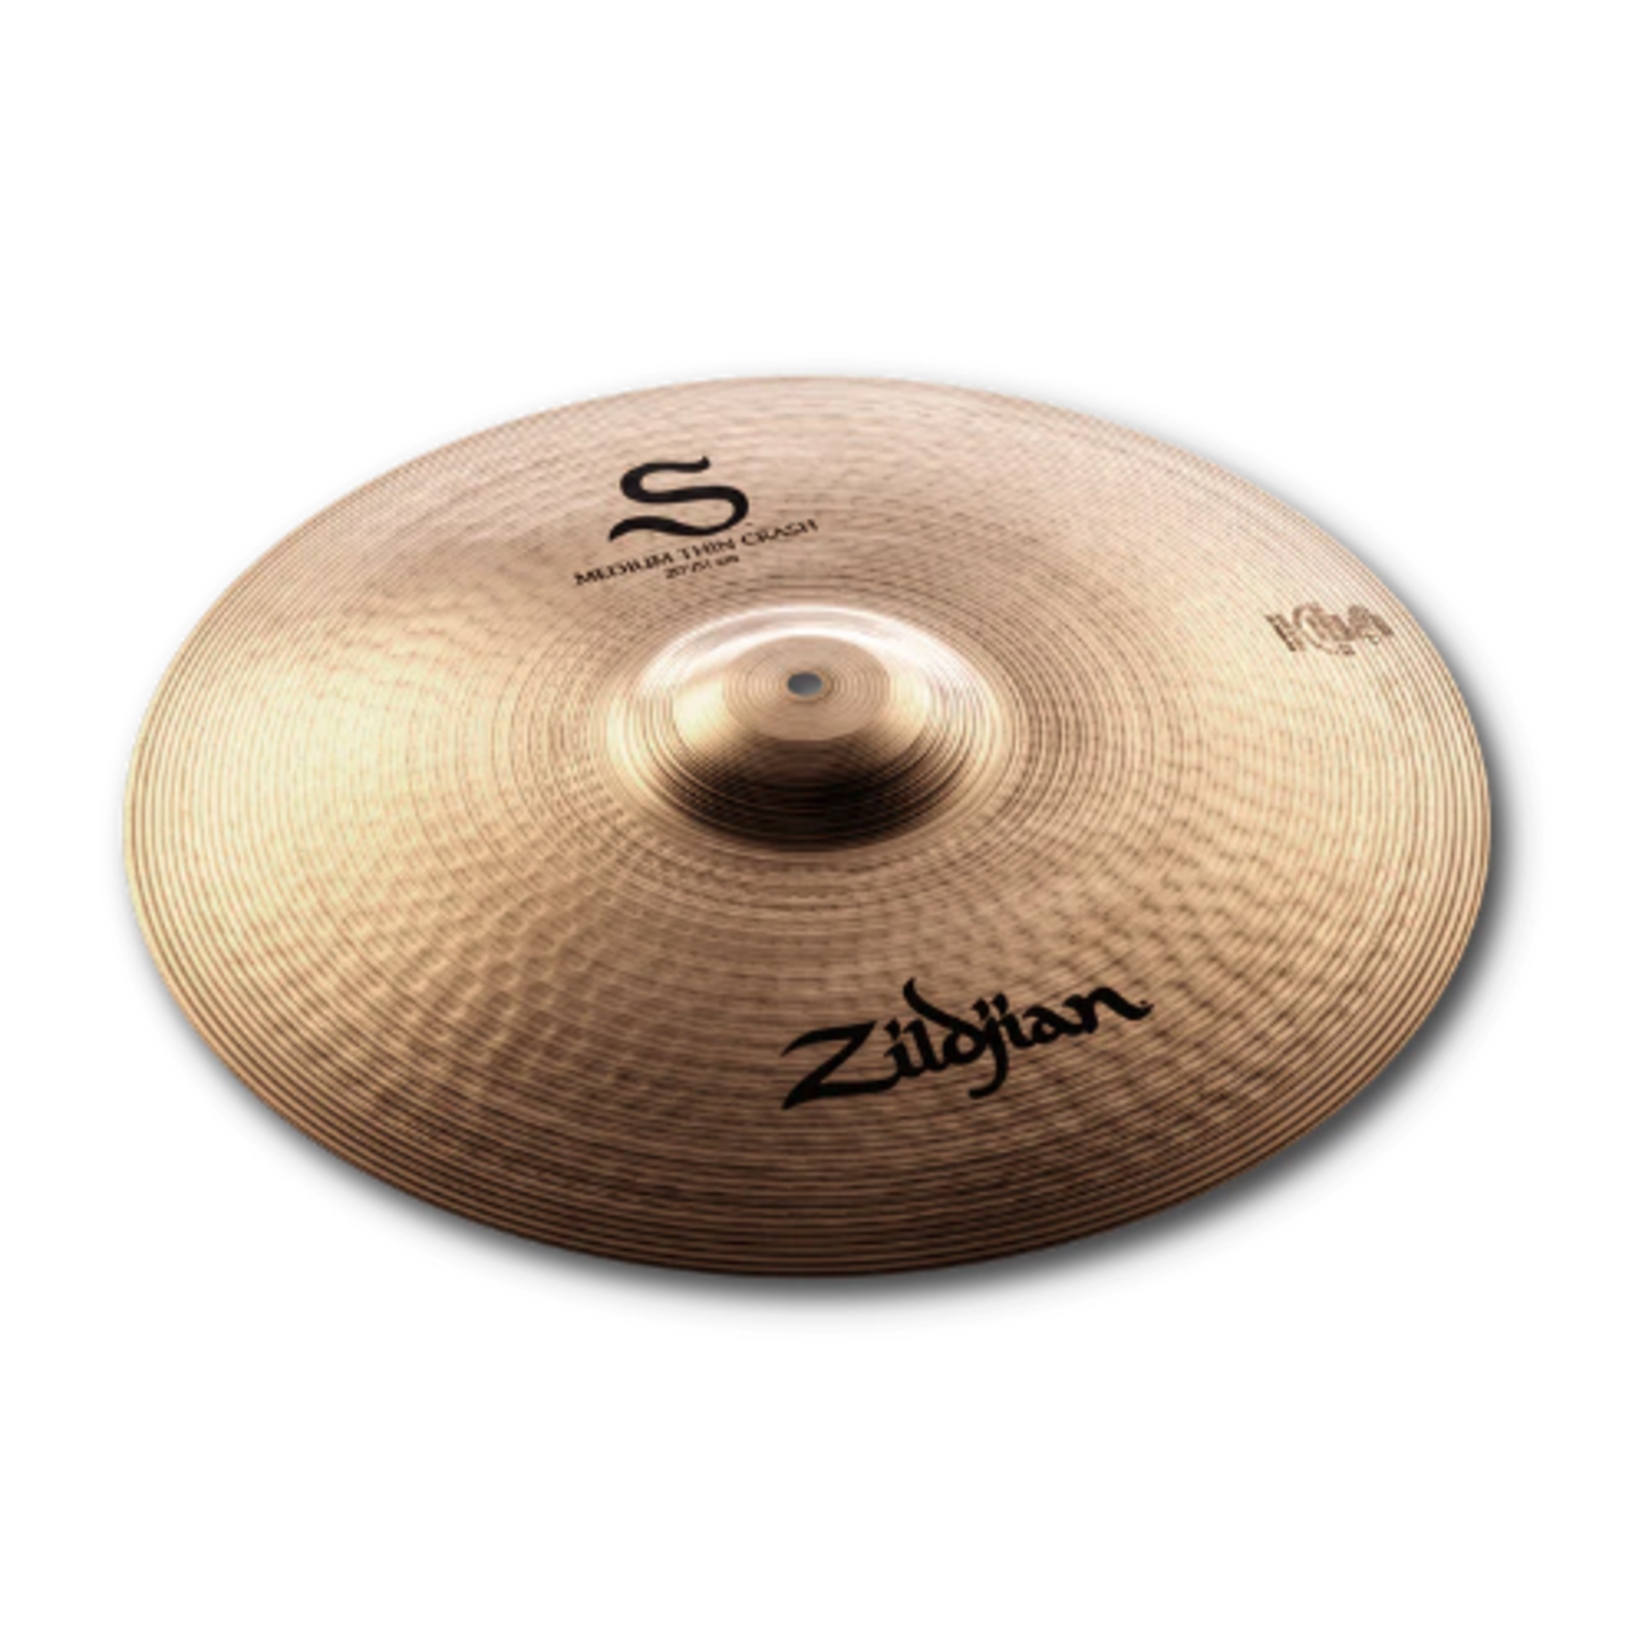 Zildjian 18" S Series Thin Crash Cymbal